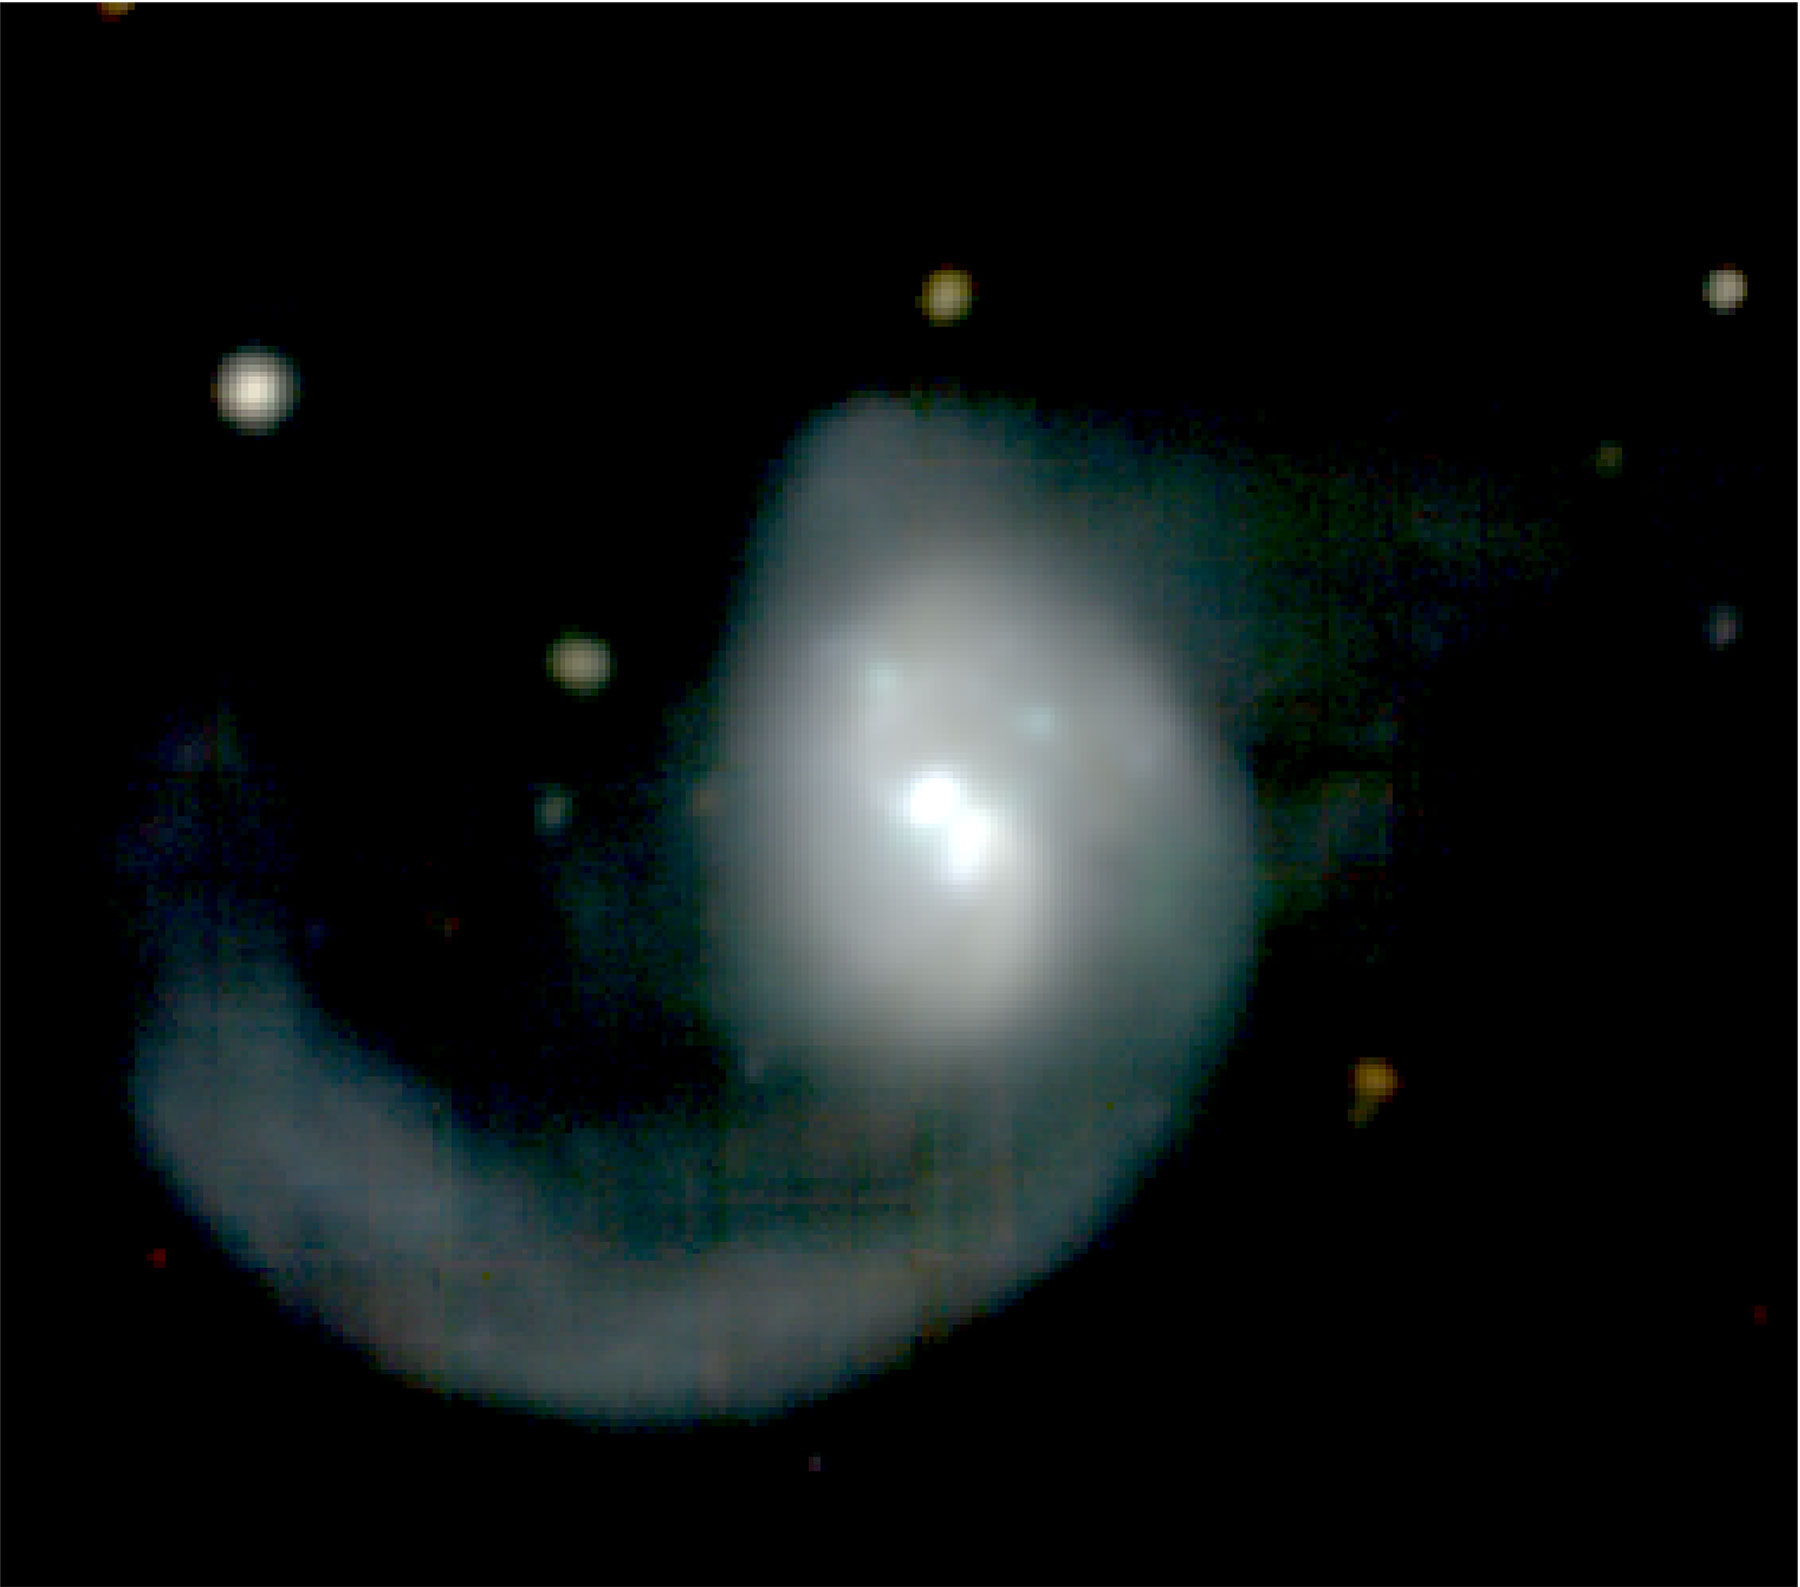 Zdjęcie aktywnej galaktyki ESO 253-3, która jest jedną z pierwszych, w której zaobserwowano regularnie występujące rozbłyski świetlne. Galaktyka znajduje się w odległości około 570 milionów l.św. na południowym niebie w gwiazdozbiorze Malarza (łąc. Pictor). Teleskop ESO wykonał to zdjęcie w ramach „zabawnego” przeglądu nieba AMUSING (skrót od ang. the All-weather MUse Supernova Integral-field of Nearby Galaxies ). Źródło: Michael Tucker (University of Hawai’i) and the AMUSING survey